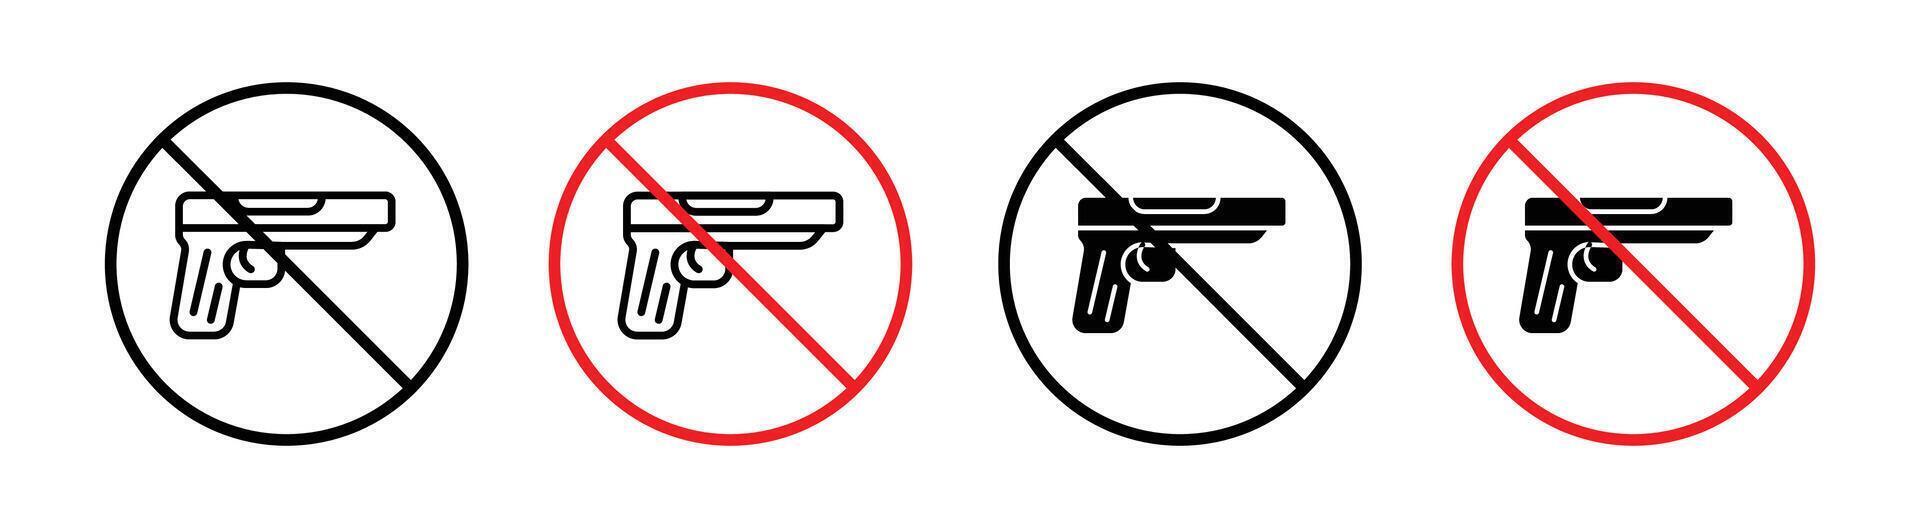 No gun icon vector